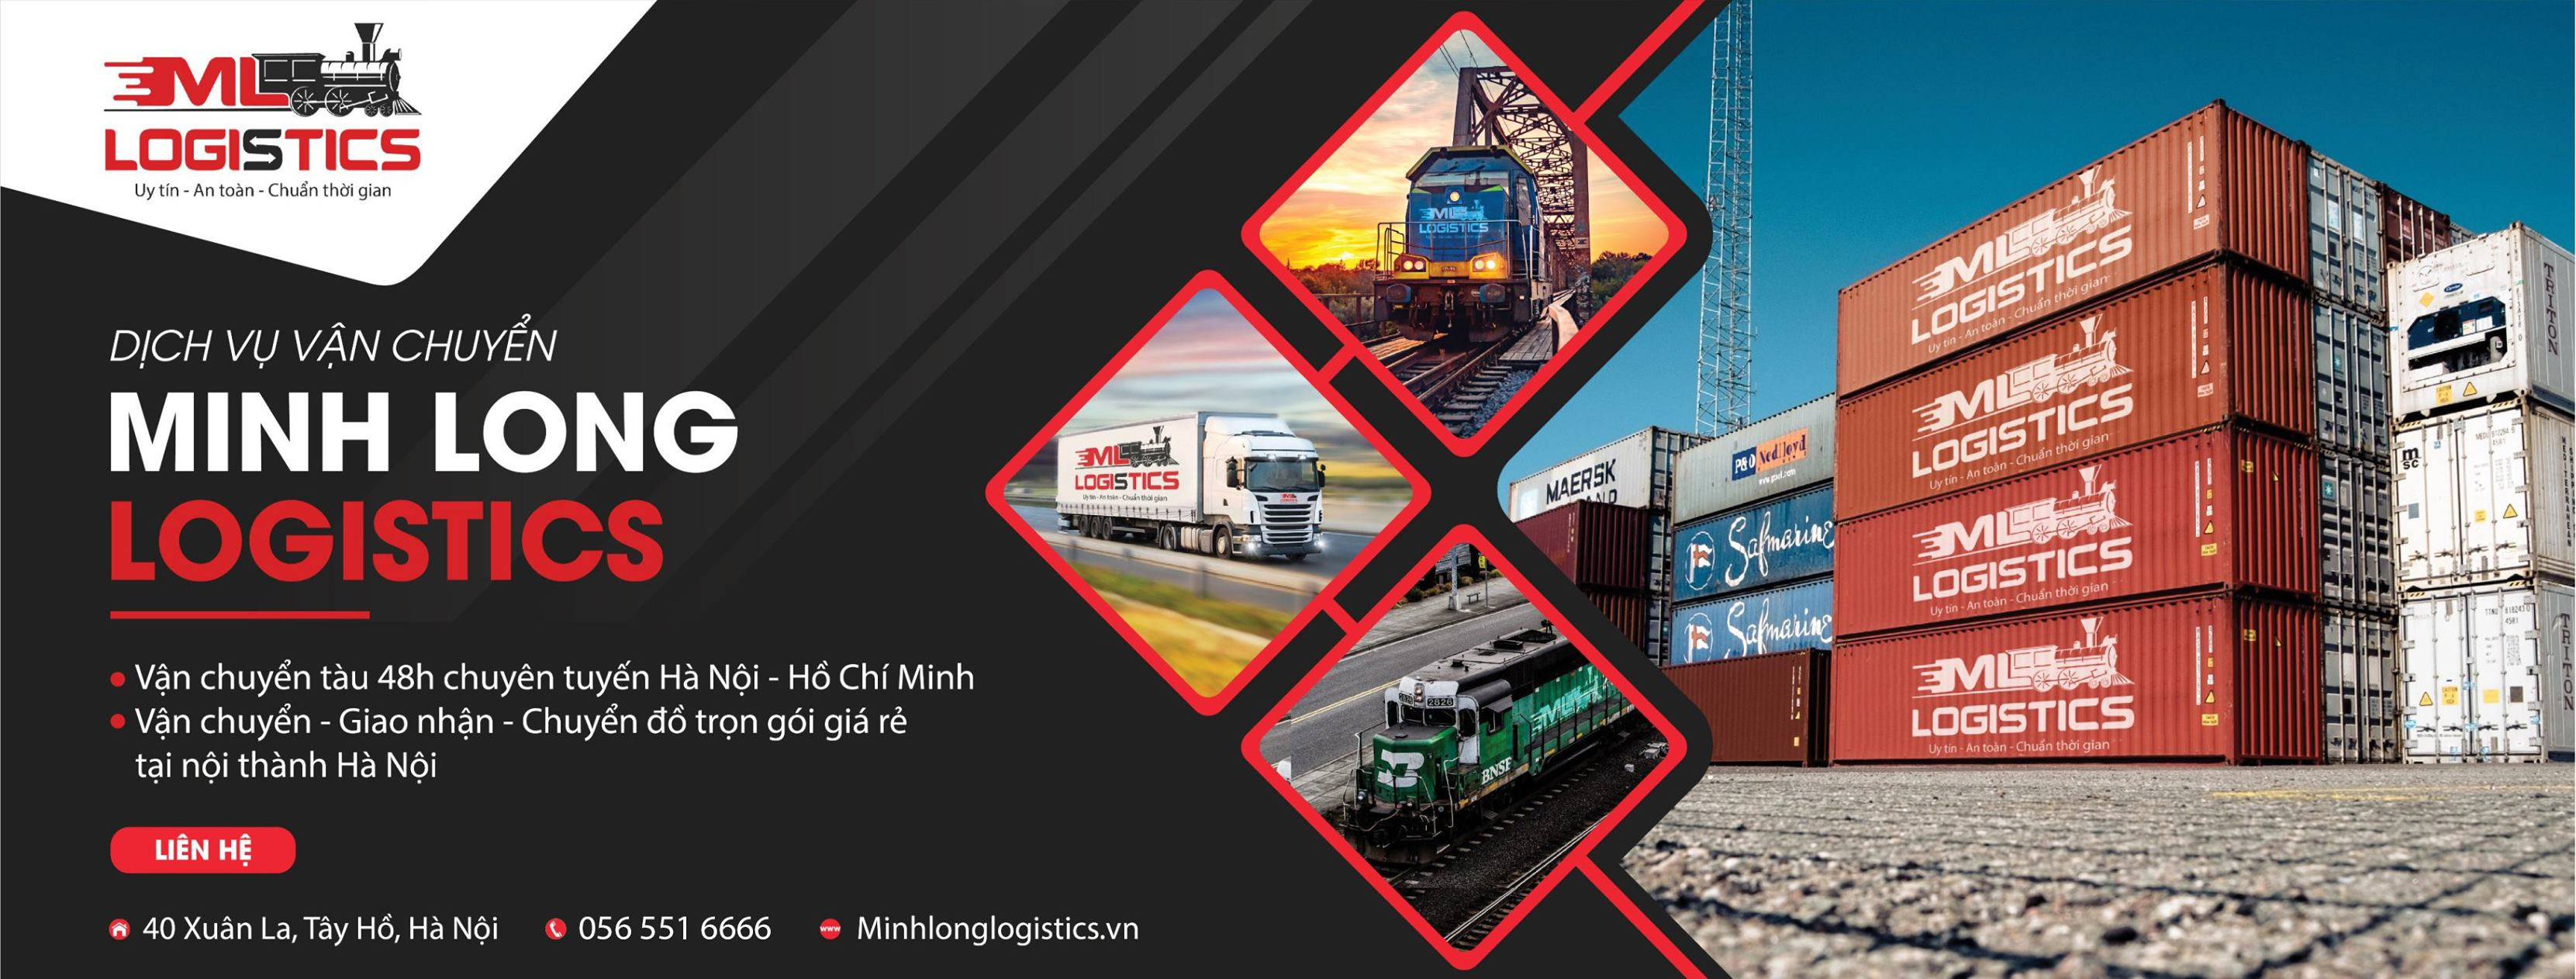 Vui lòng liên hệ Minh Long Logistics để được tư vấn về quy định vận chuyển